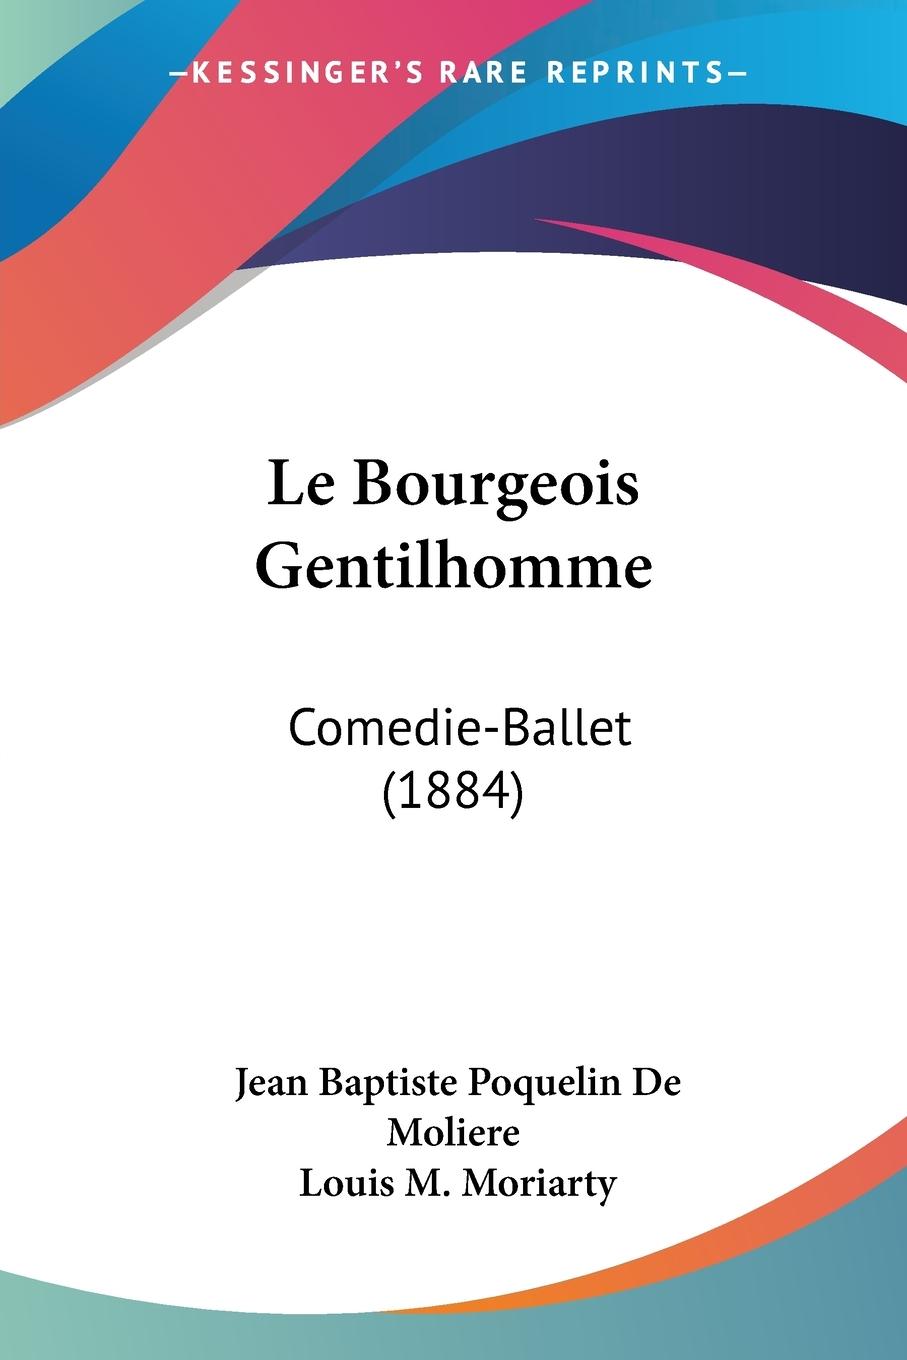 Le Bourgeois Gentilhomme - Moliere, Jean Baptiste Poquelin De